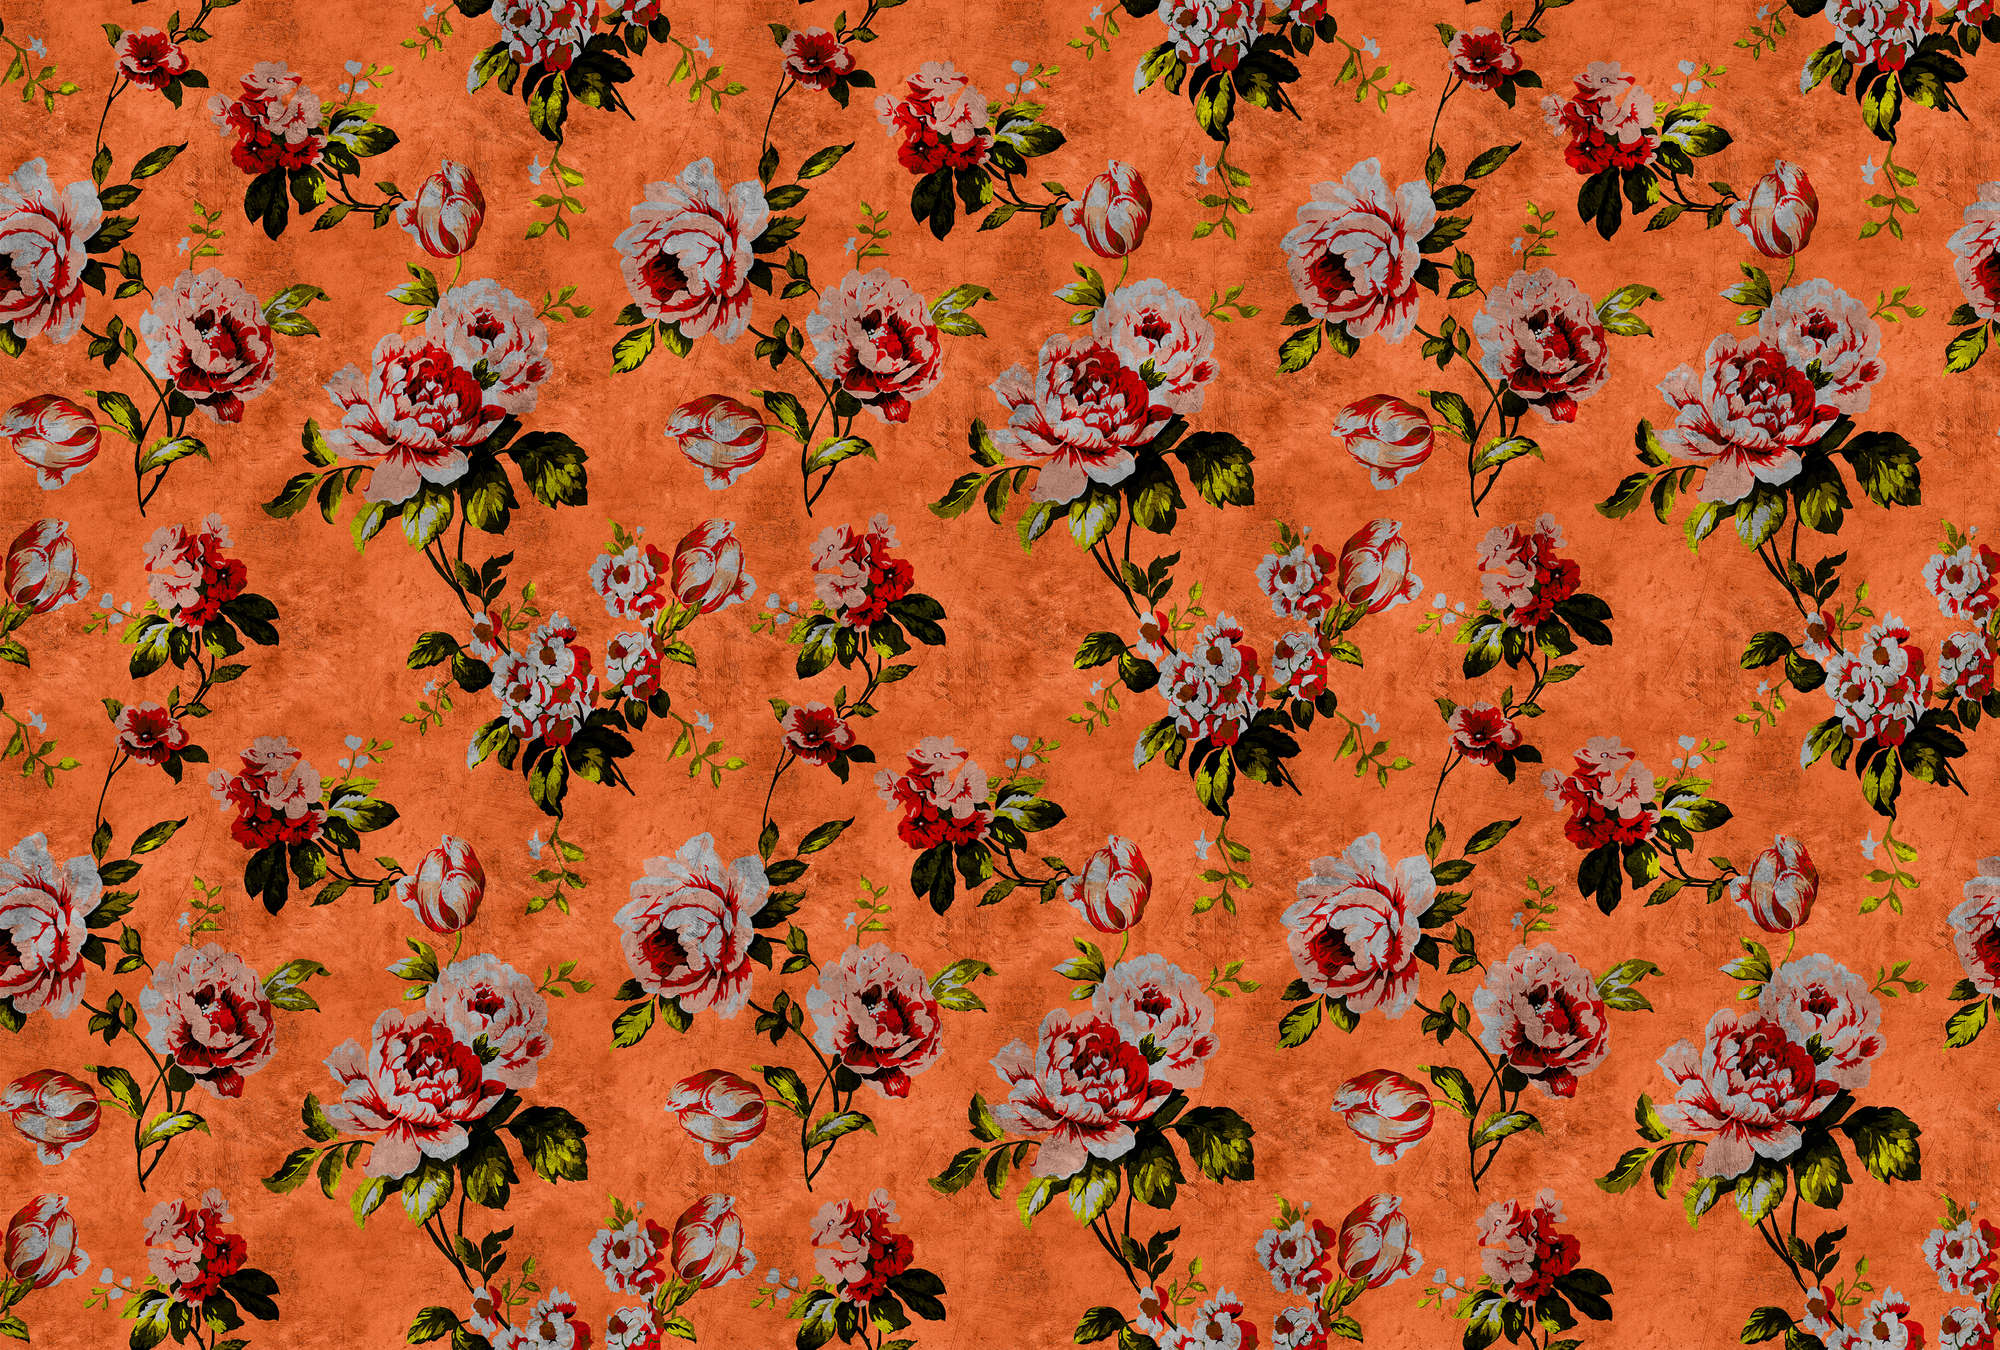             Wild roses 2 - Rosen Fototapete in kratzer Struktur im Retrolook, Orange – Gelb, Orange | Mattes Glattvlies
        